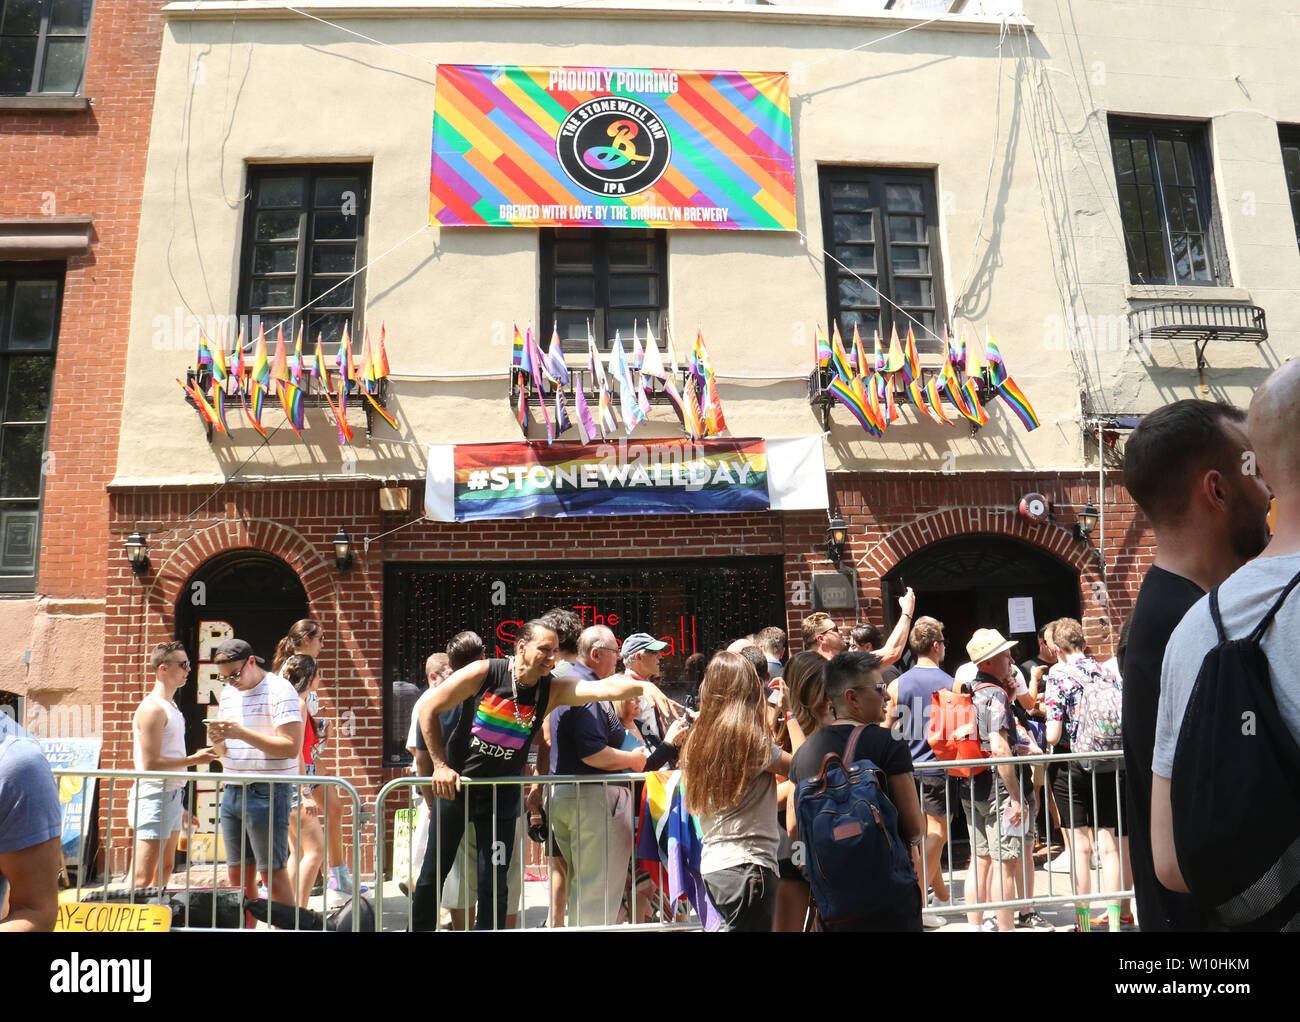 Nueva York, Nueva York, Estados Unidos. El 28 de junio, 2019. Stonewall en Greenwich Village, Nueva York, 28 de junio de 2019 Crédito: Mpi43/Media Punch/Alamy Live News Foto de stock